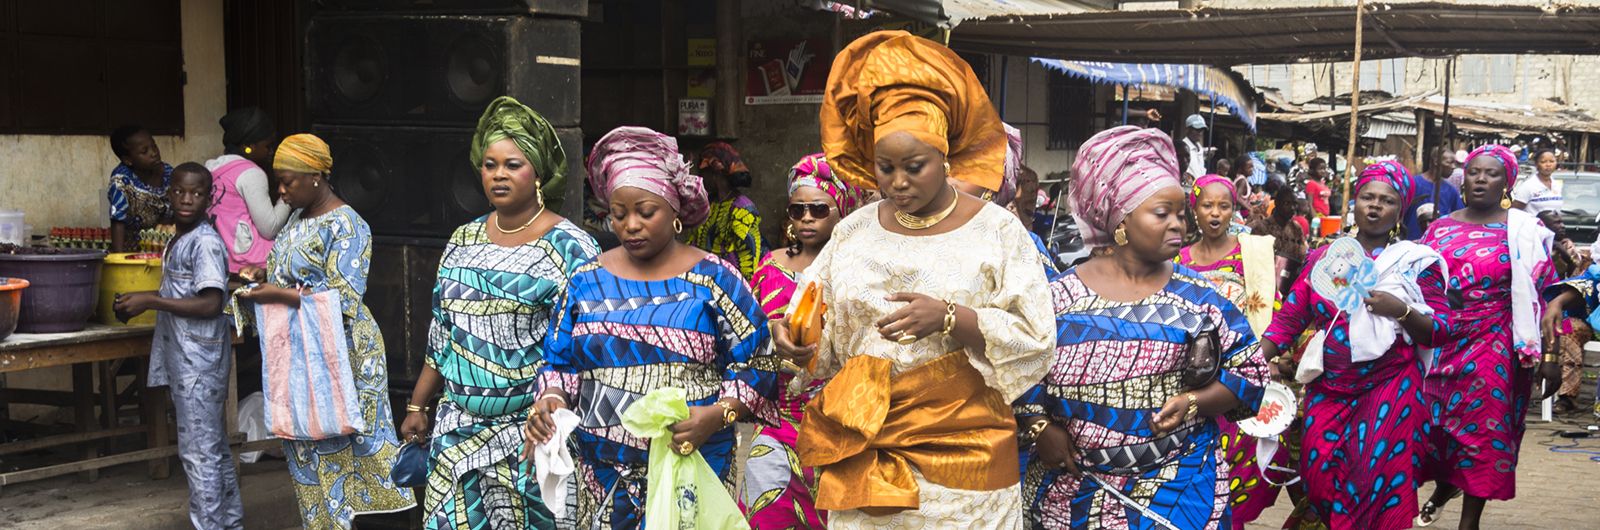 Benin. Festival mundial del Vudú